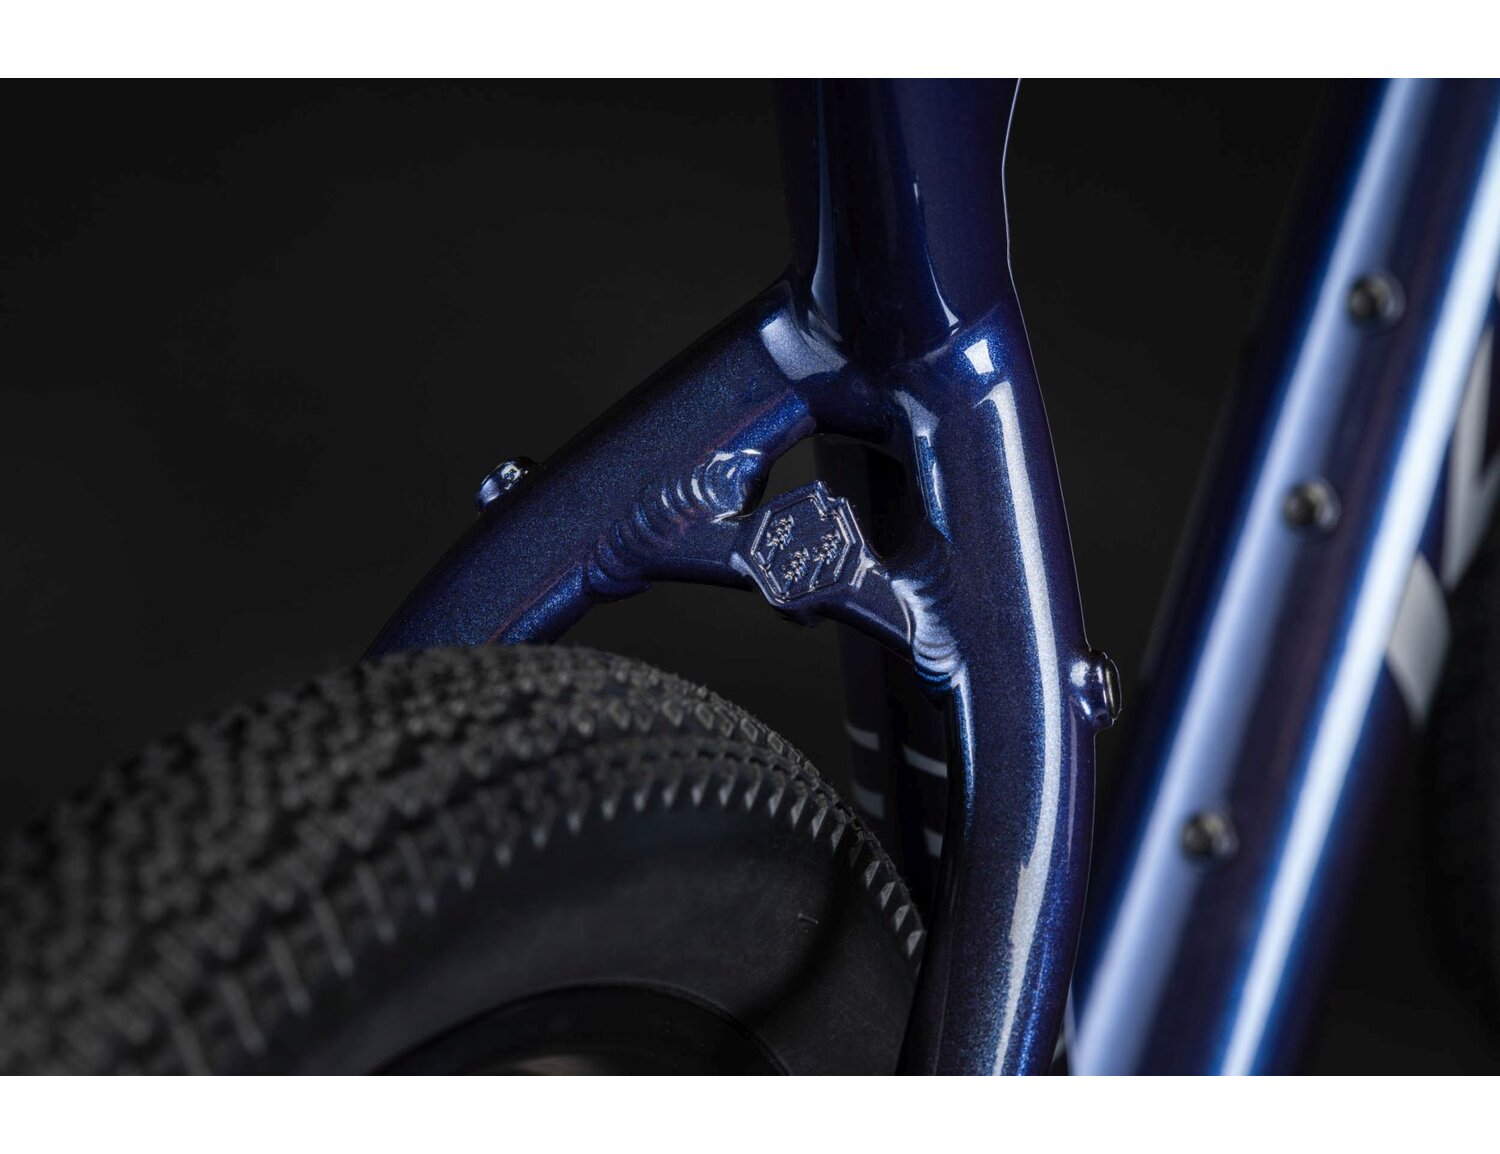  Rama aluminiowa nowej generacji gen2 w kolorze granatowym oraz opony WTB Riddler w rowerze gravelowym Kross Esker 2.0 